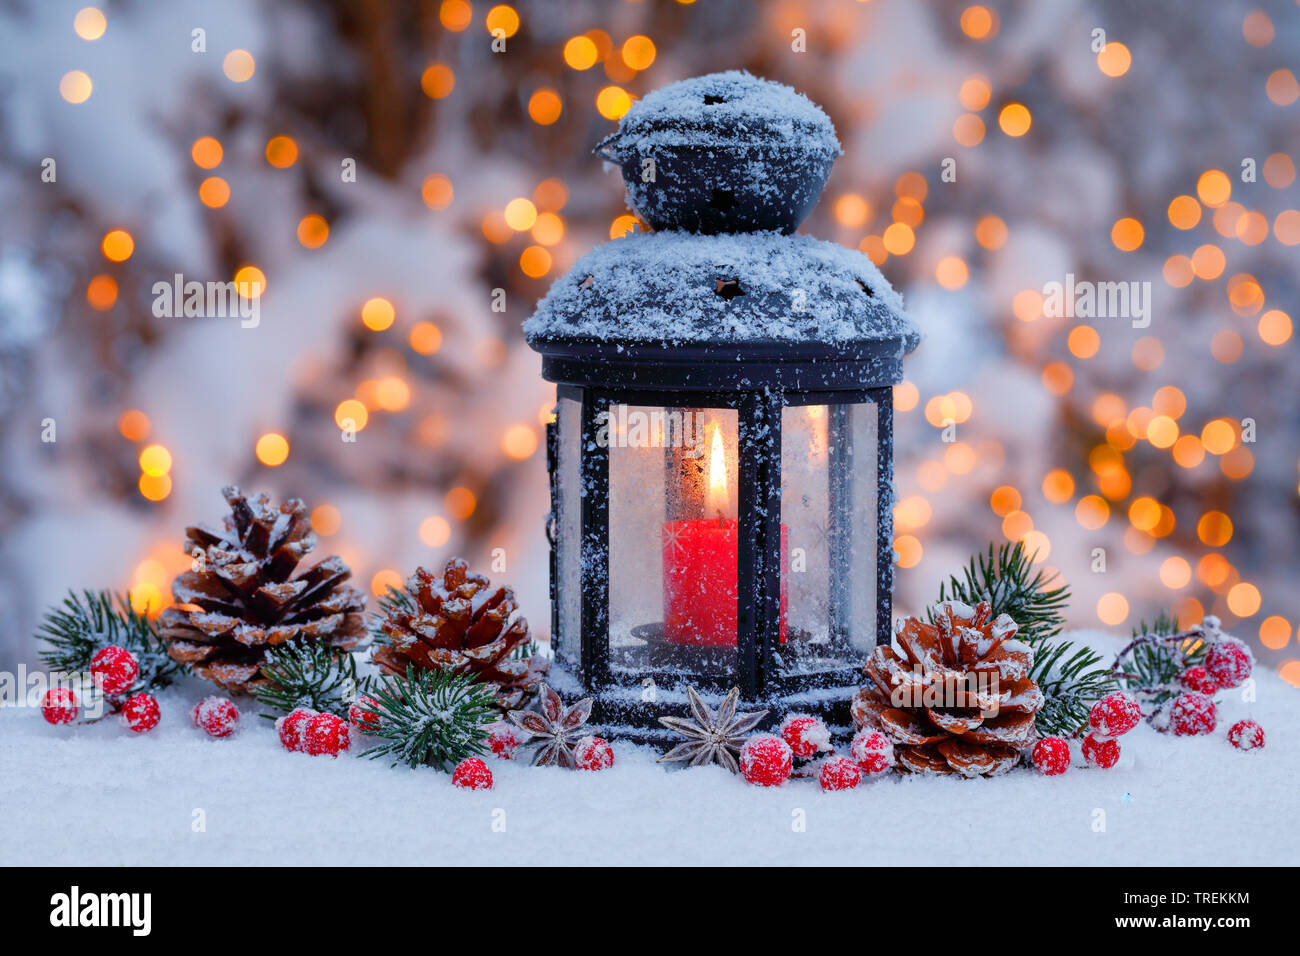 Laterne mit Weihnachten Dekoration stehen im Schnee, Schweiz  Stockfotografie - Alamy